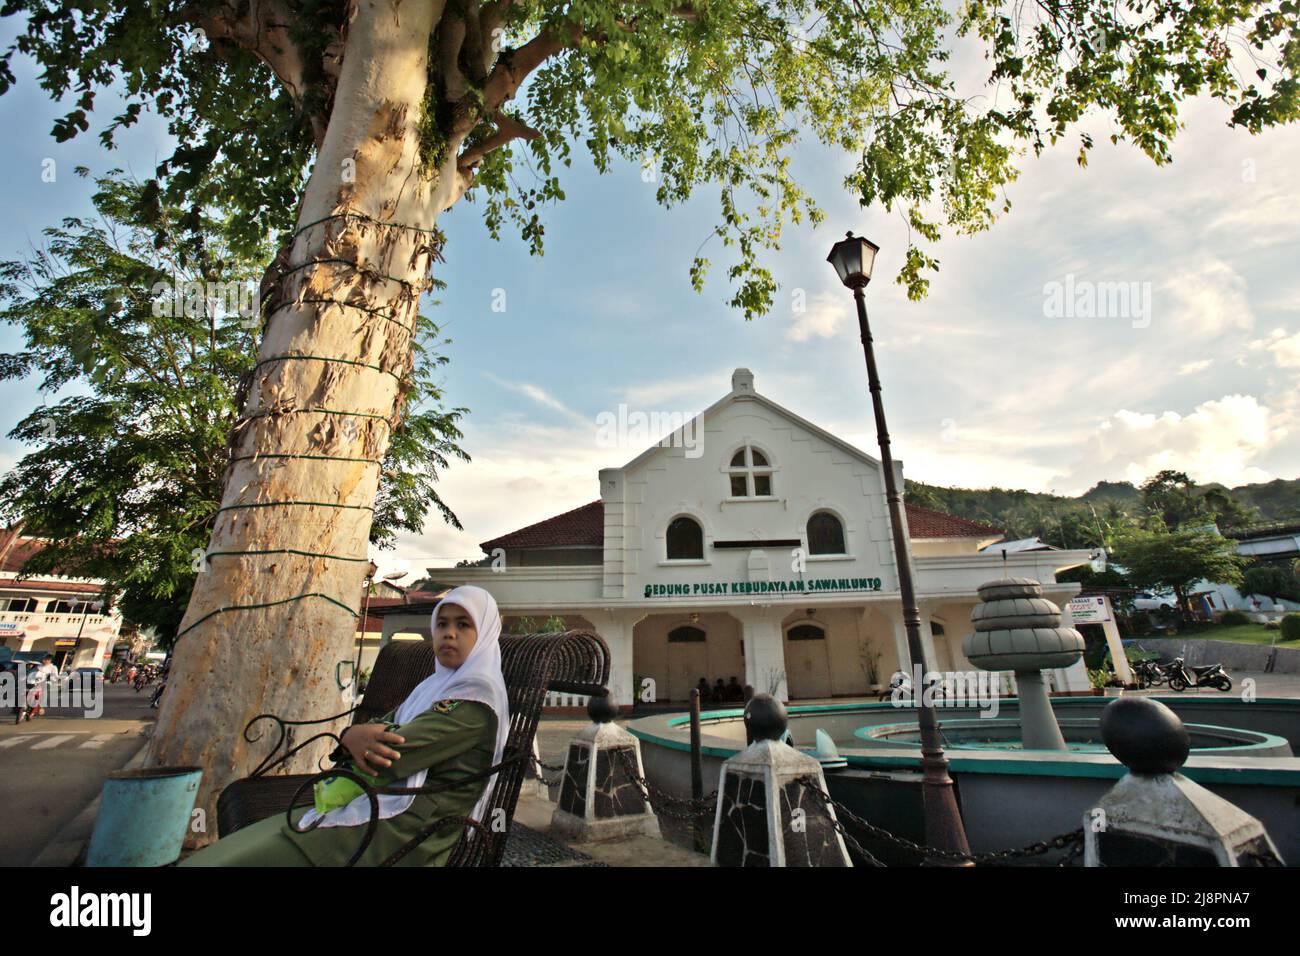 Eine Frau in Regierungsuniform sitzt auf einer Bank im Hintergrund von Gedung Pusat Kebudayaan Sawahlunto (Sawahlunto-Kulturzentrum) in Sawahlunto, einer ehemaligen Kohlebergbaustadt, die Ende des 19.. Jahrhunderts von niederländischen Kolonialisten in West-Sumatra, Indonesien, gegründet wurde. Stockfoto